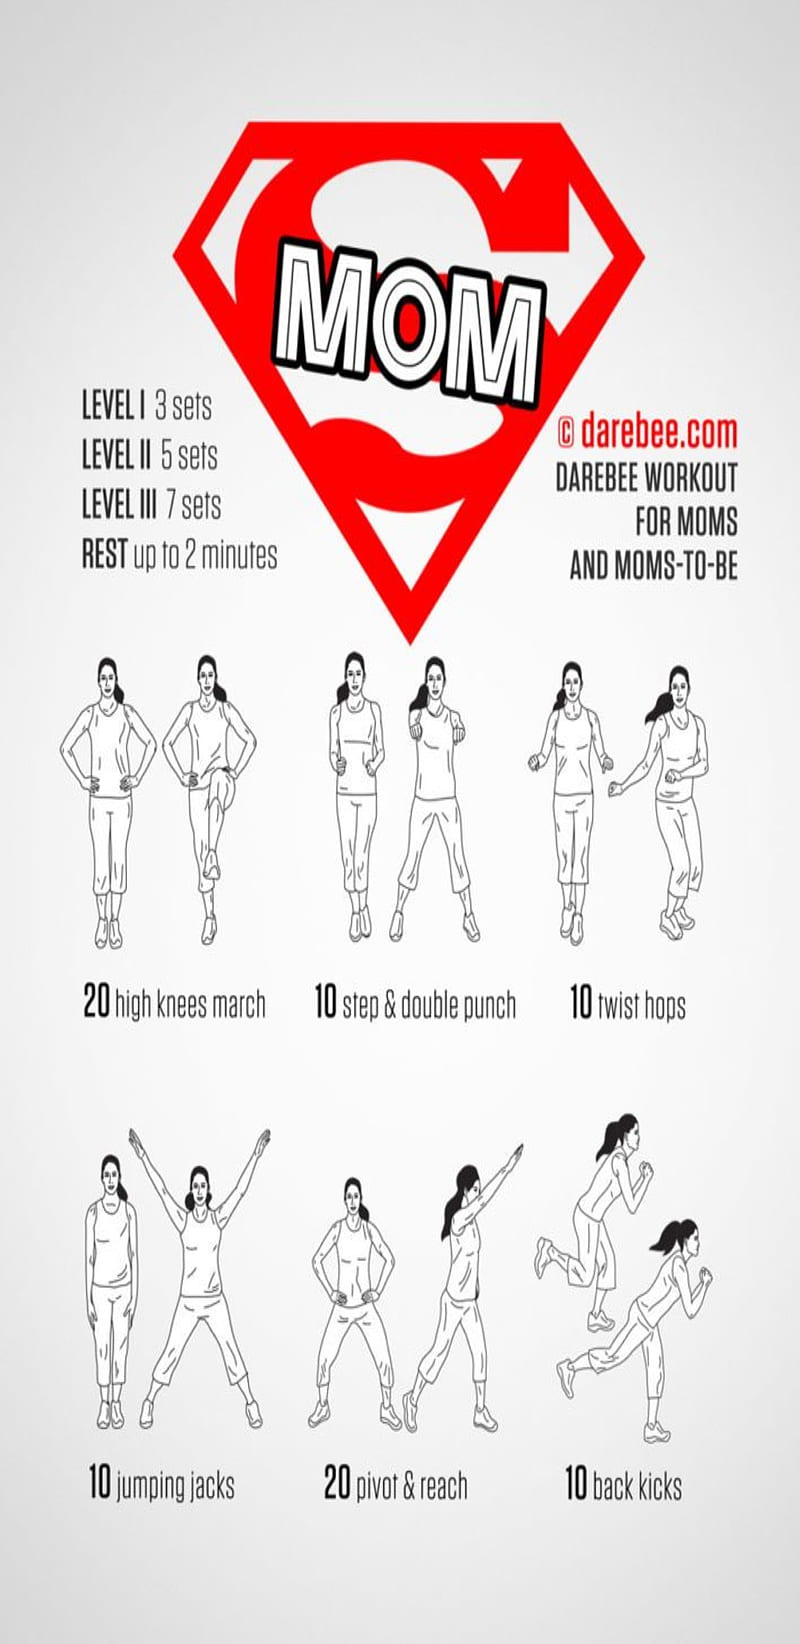 DAREBEE on X: 1 Minute Yoga Challenge by DAREBEE  # darebee #challenge #fitness  / X